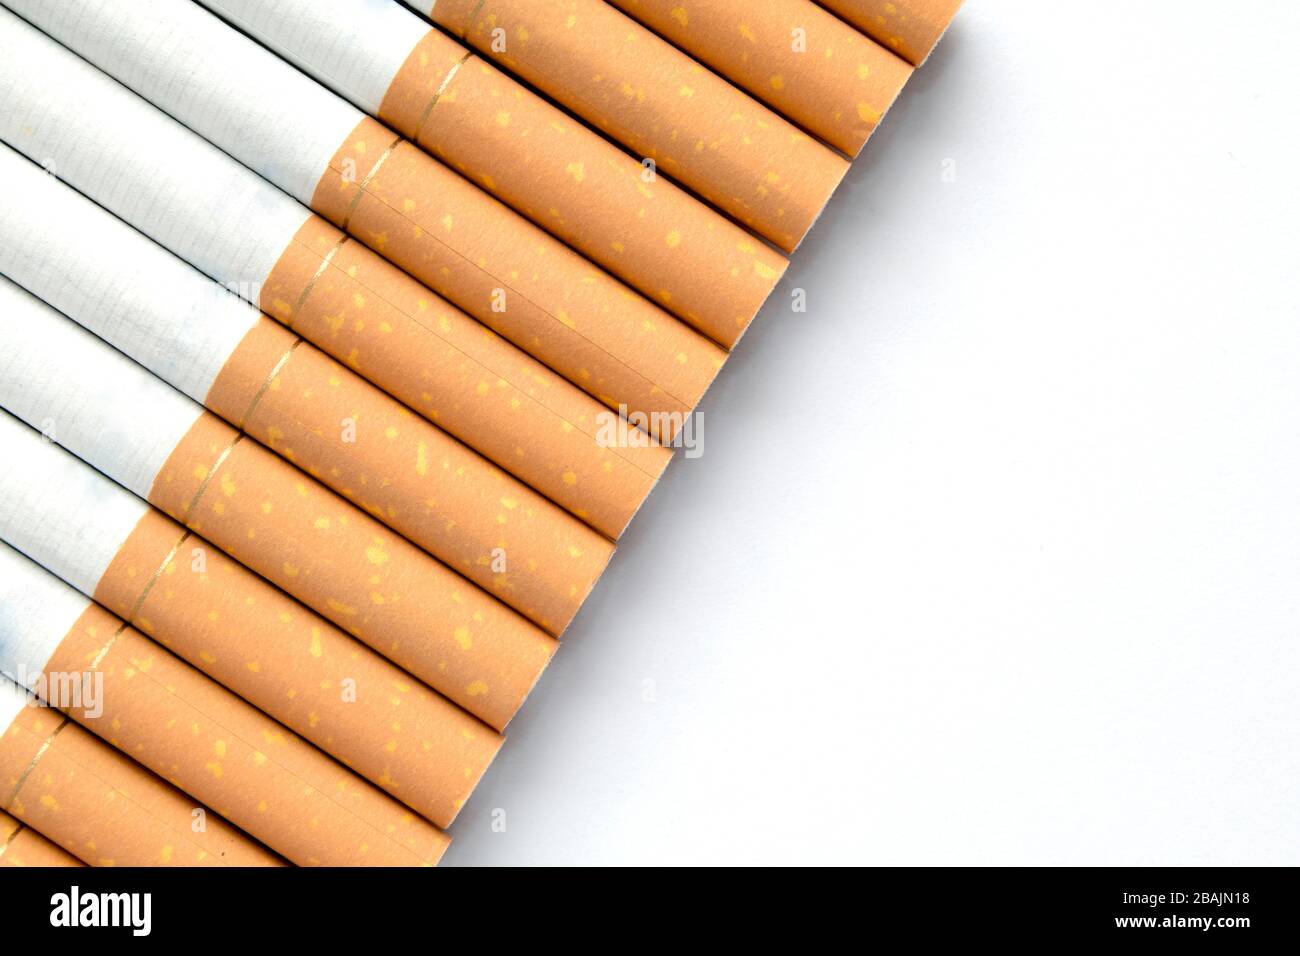 Sigarette in una riga su uno sfondo bianco isolato con copyspace per messaggi aggiuntivi Foto Stock